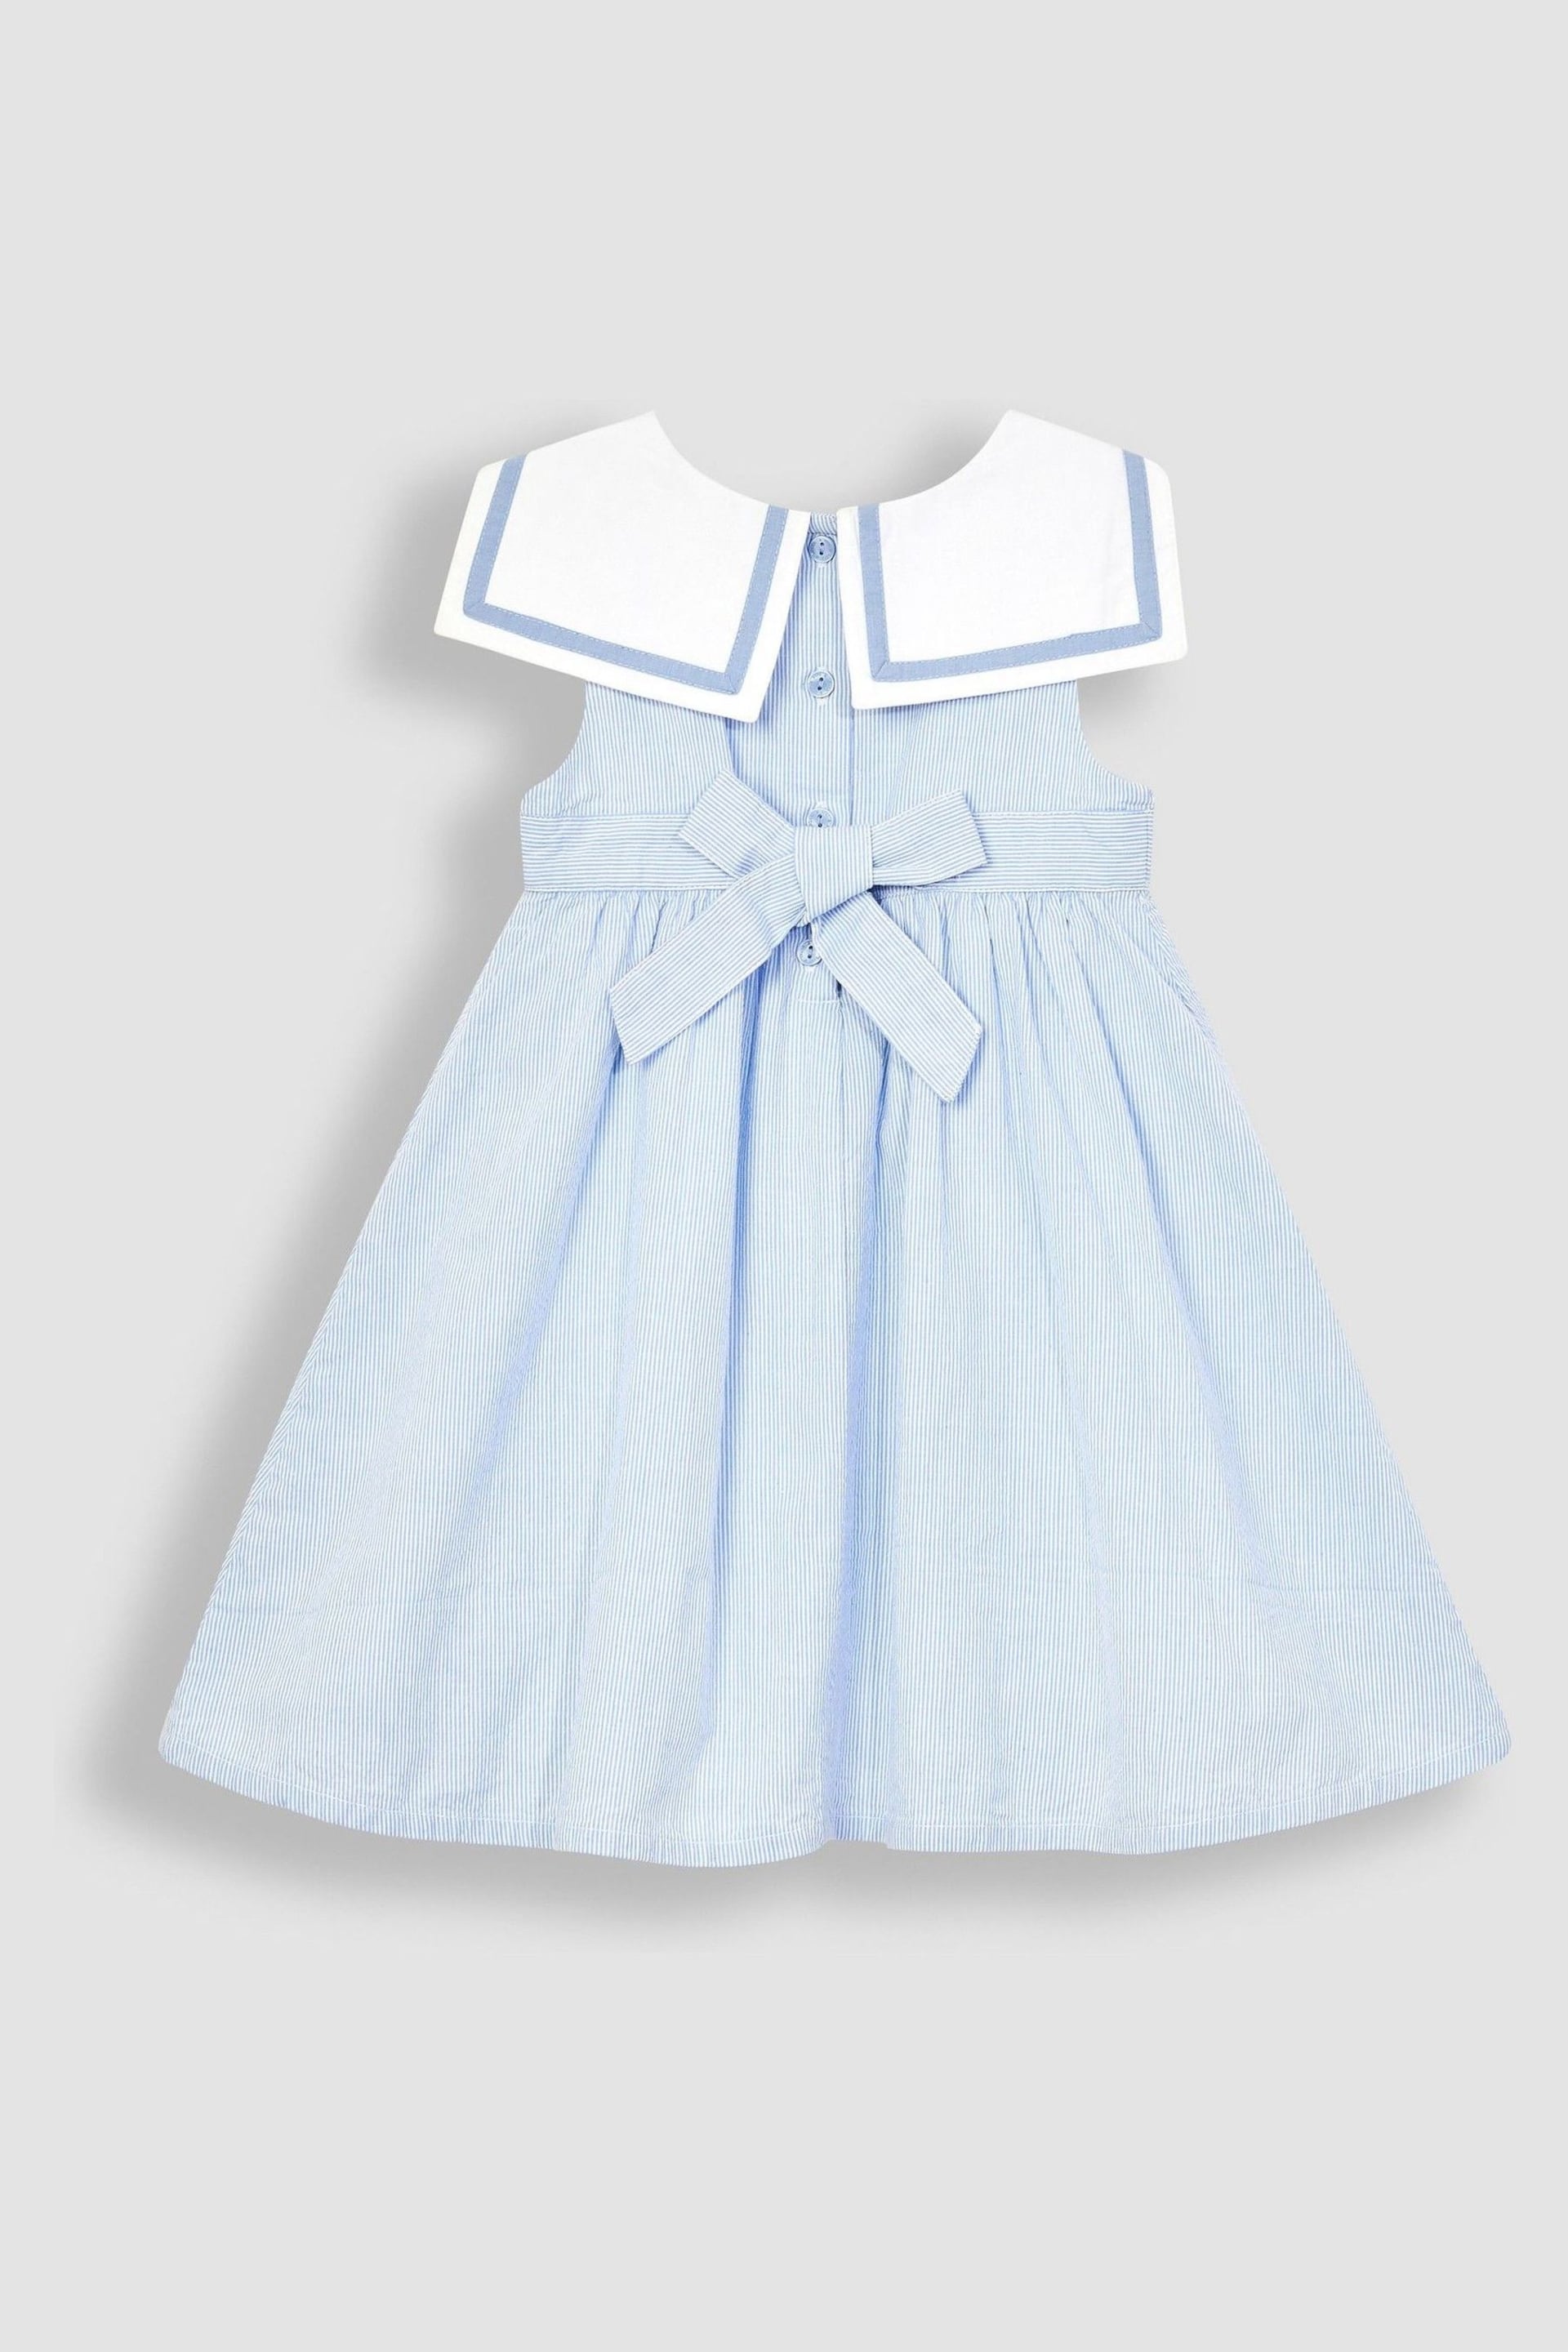 JoJo Maman Bébé Blue Sailor Party Dress - Image 3 of 6